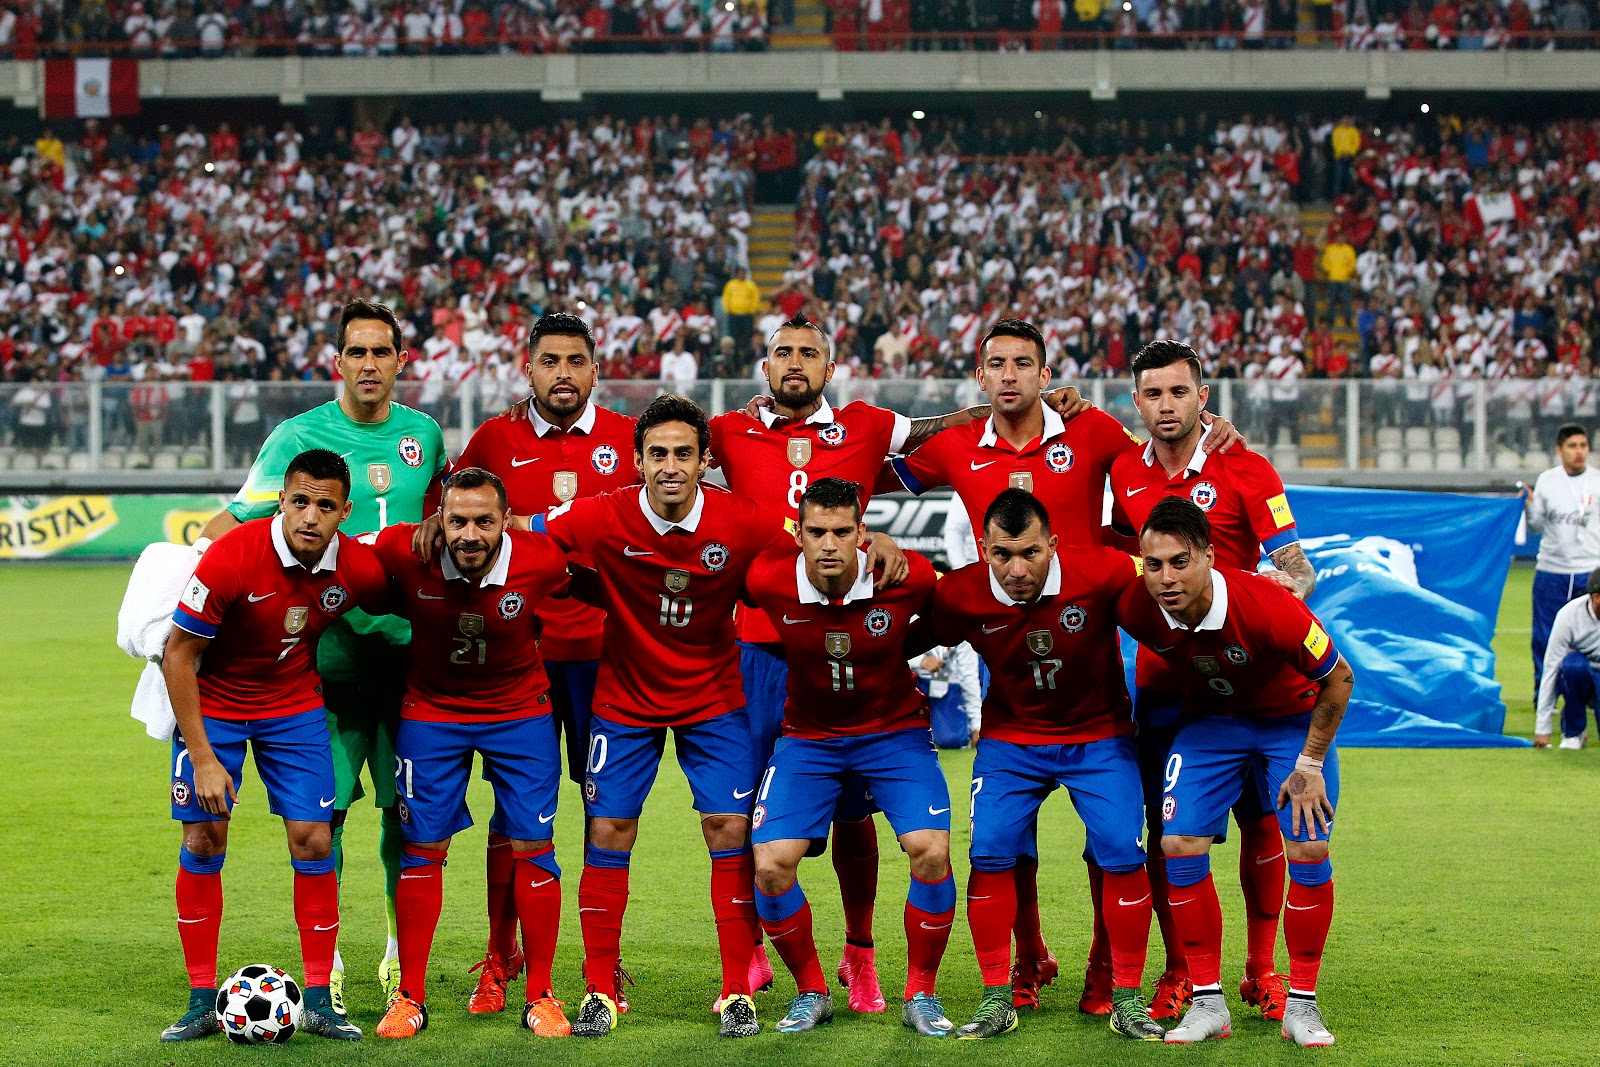 Formación de Chile ante Perú, Clasificatorias Rusia 2018, 13 de octubre de 2015